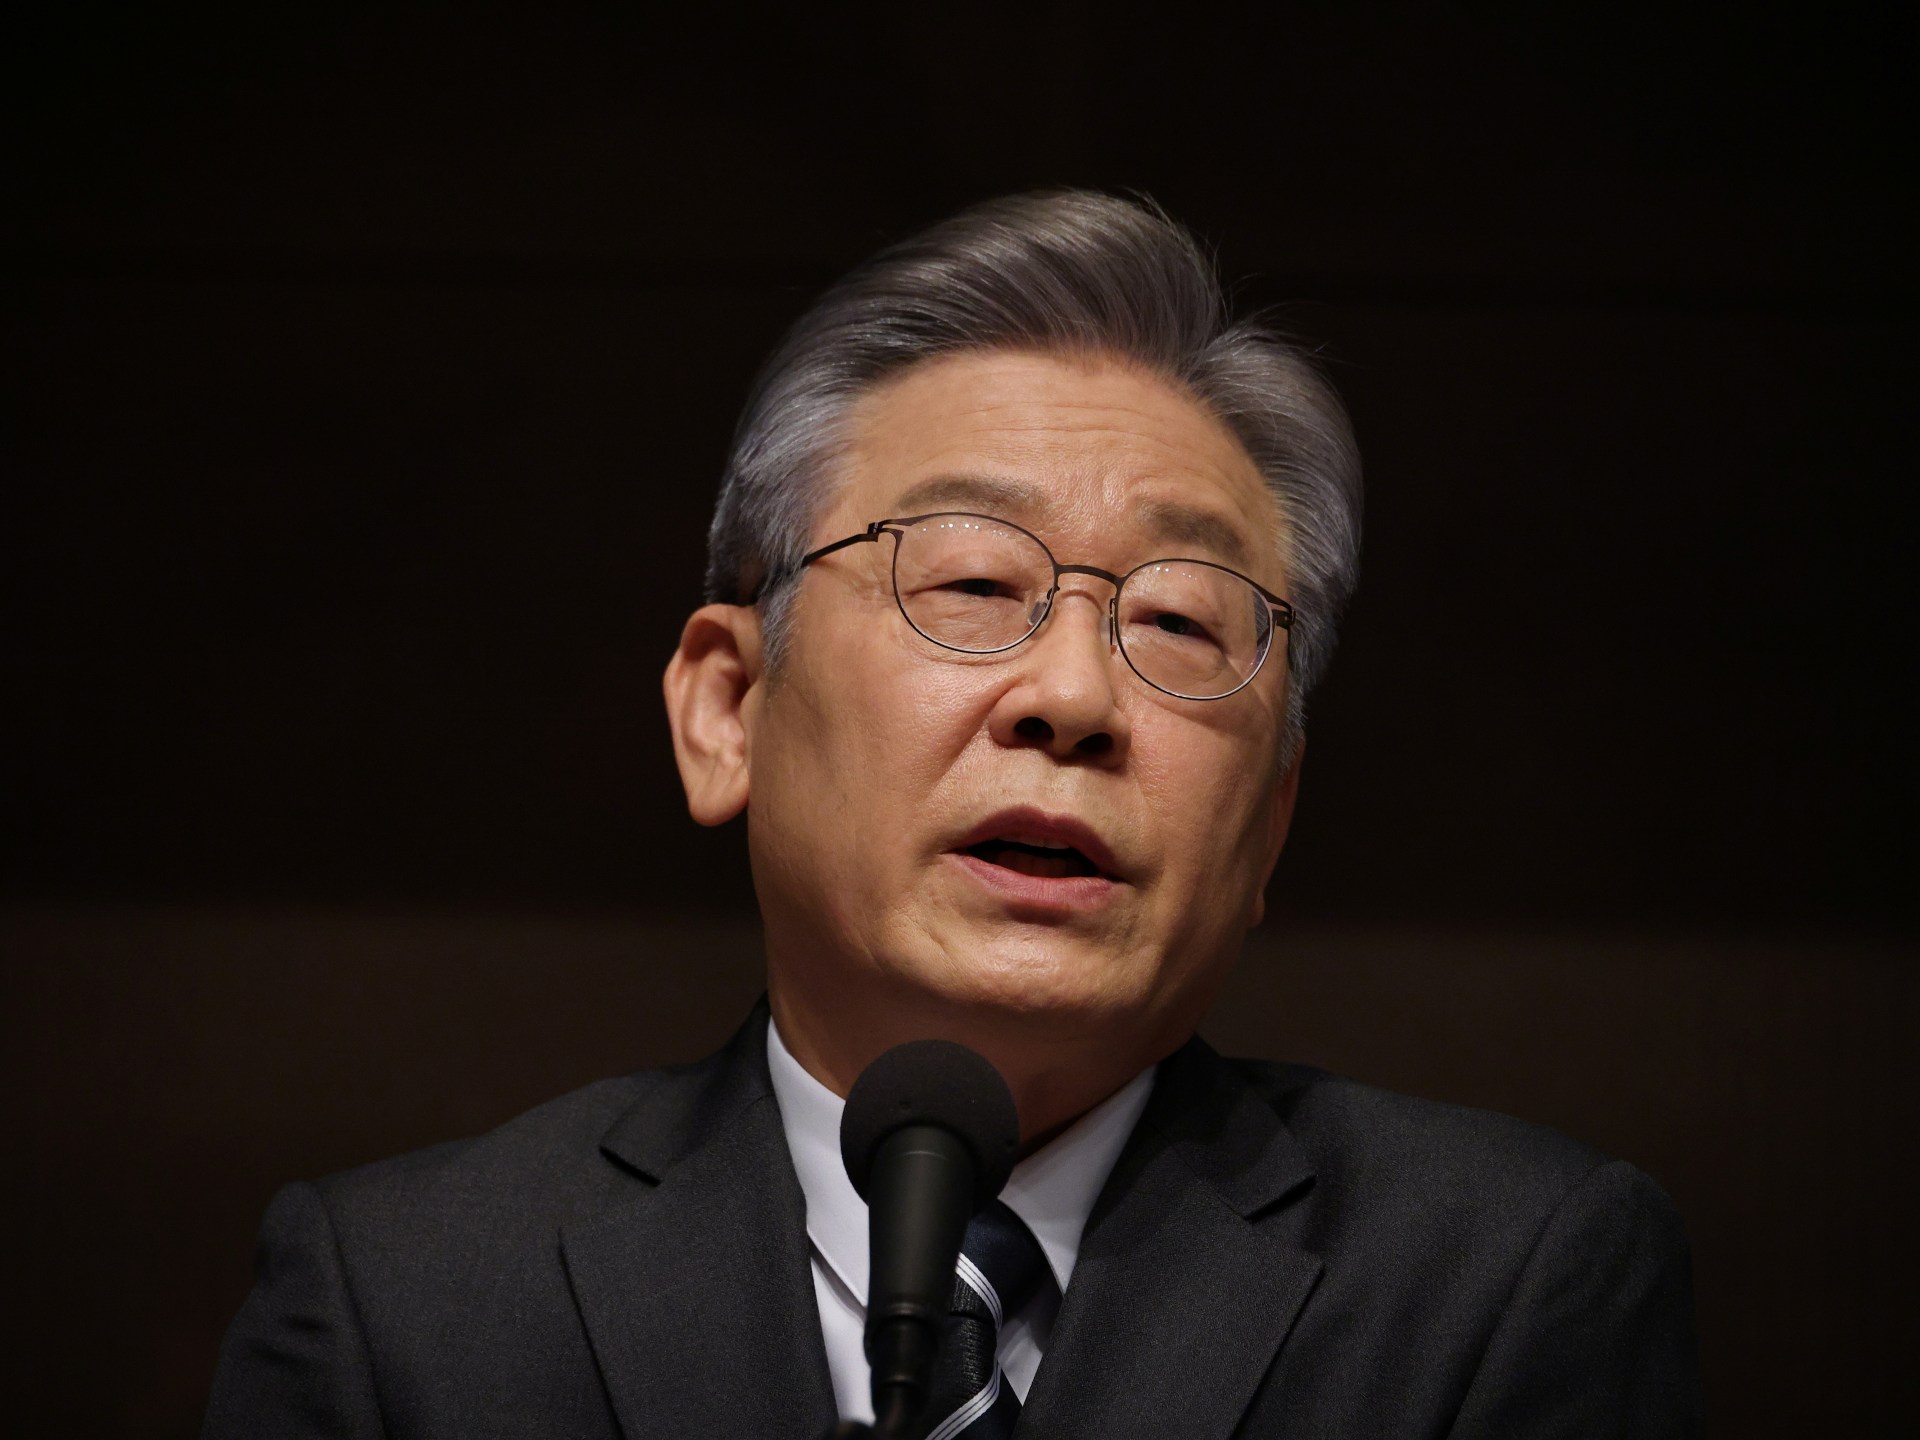 Le chef de l’opposition sud-coréenne inculpé de corruption présumée |  Nouvelles des affaires et de l’économie